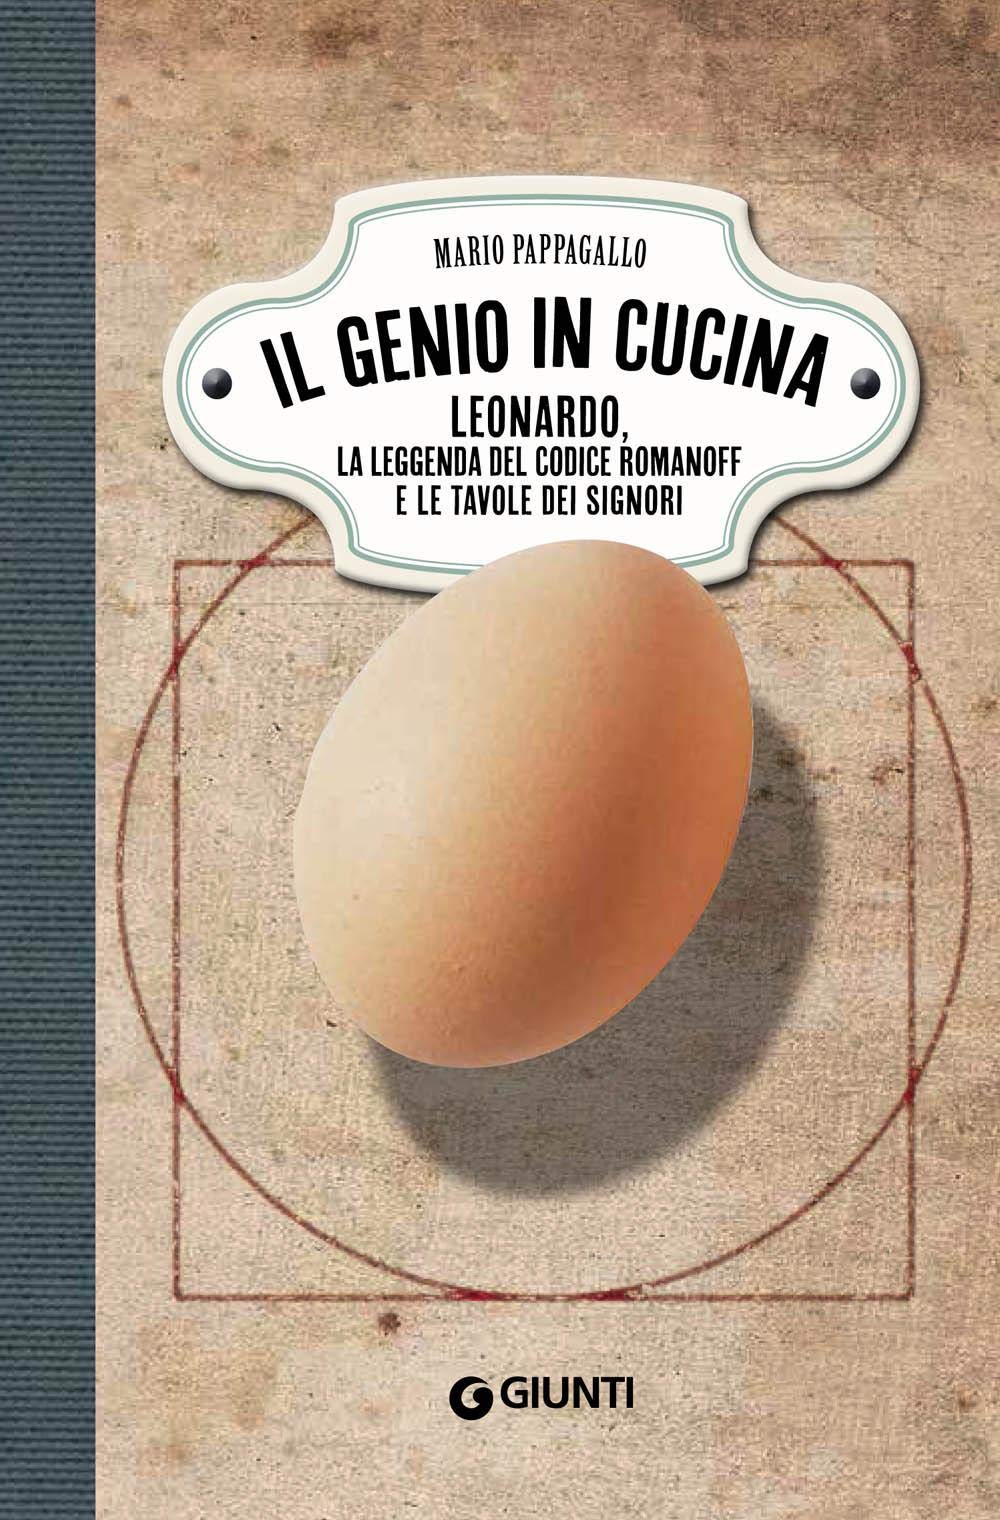 Recensione di Il Genio In Cucina – Mario Pappagallo